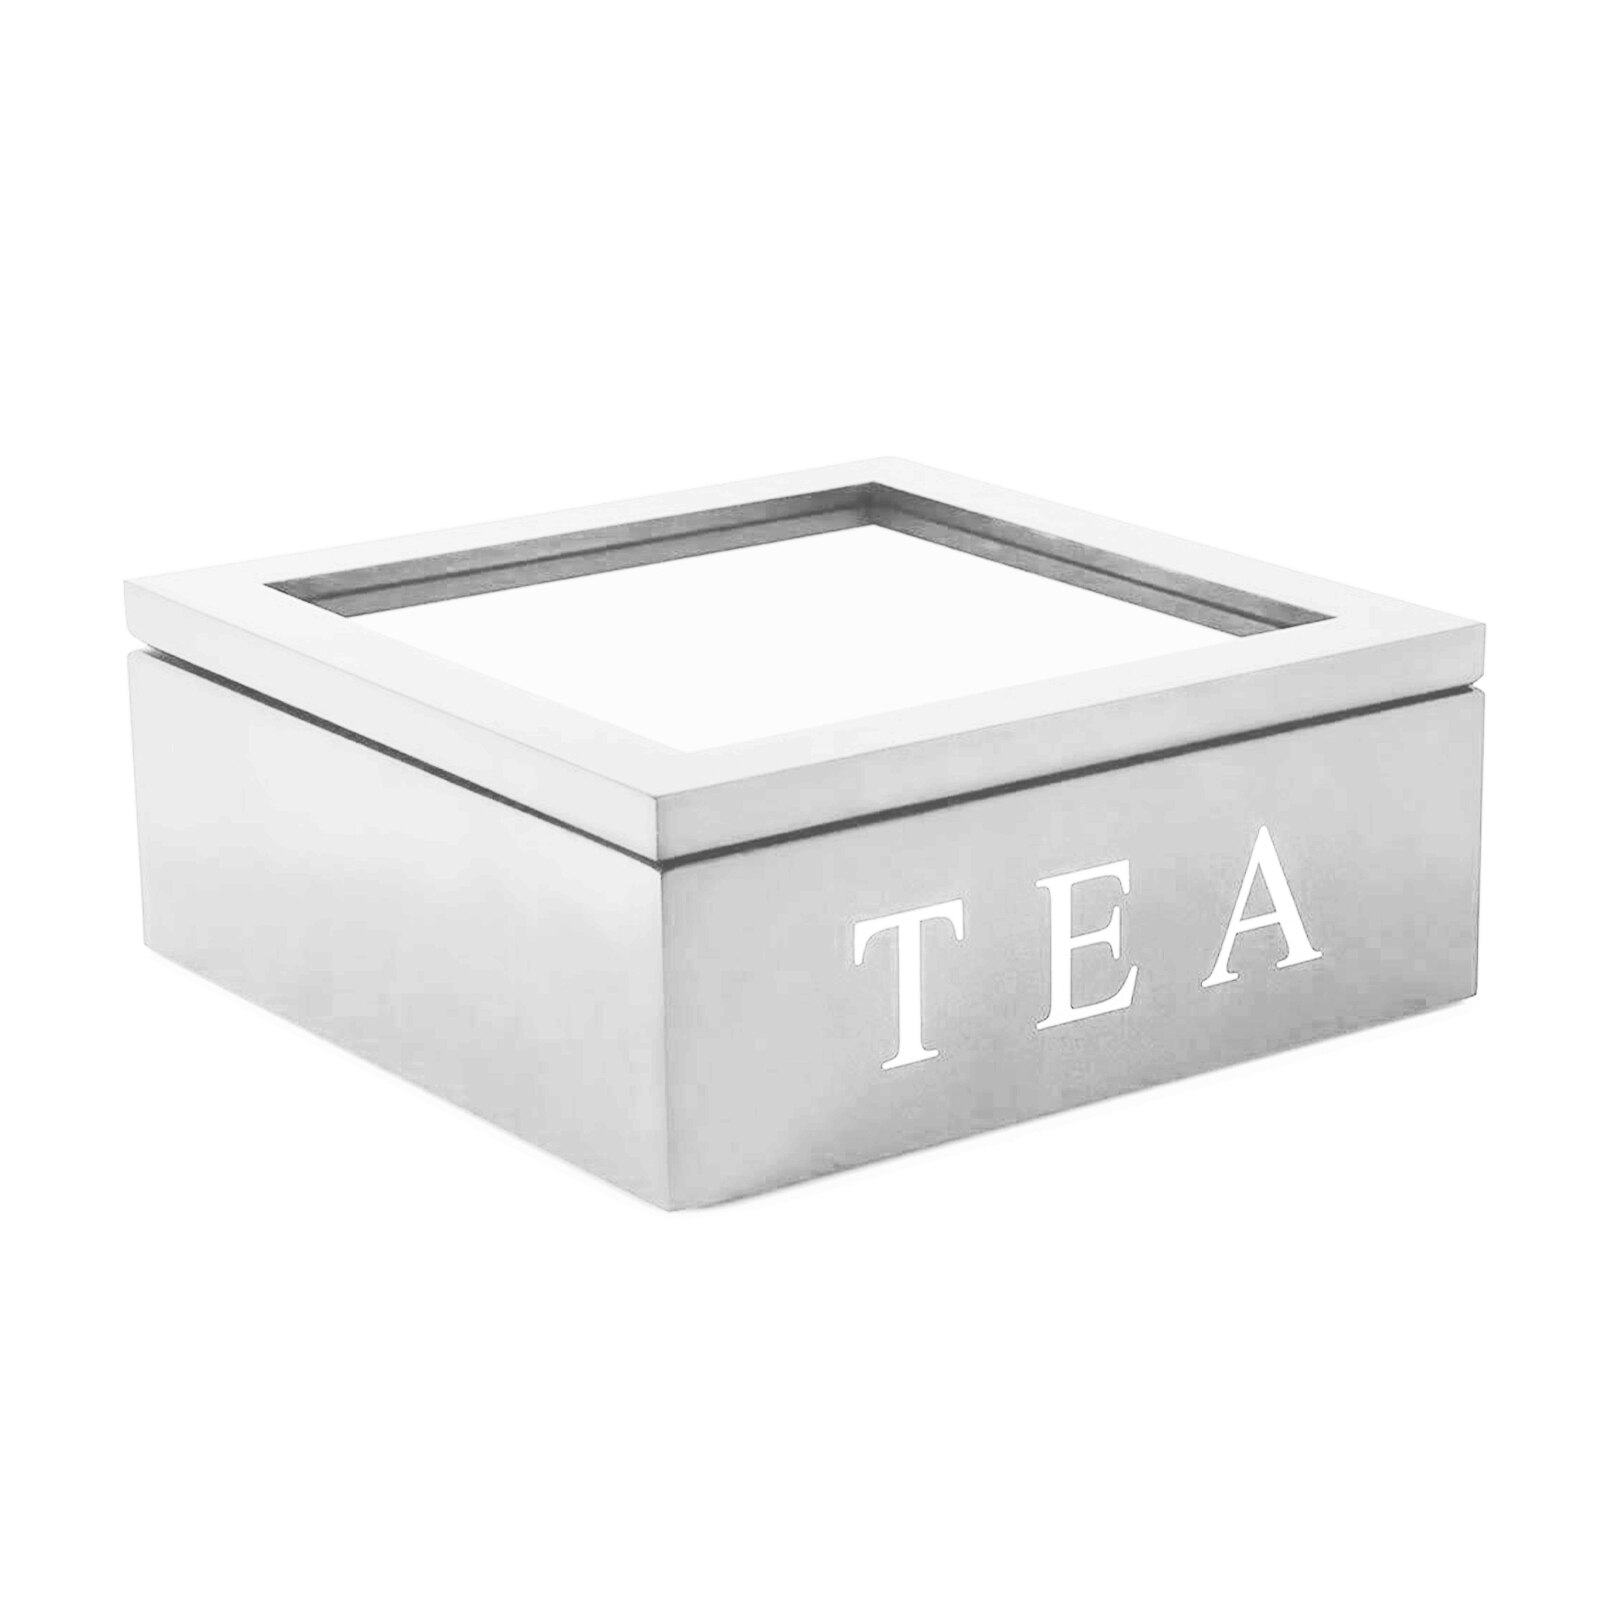 Træ te boks arrangør container træ opbevaringsrum kabinetter retro kaffe te slik taske holder arrangør til køkken: 23 x 23 x 9cm hvide